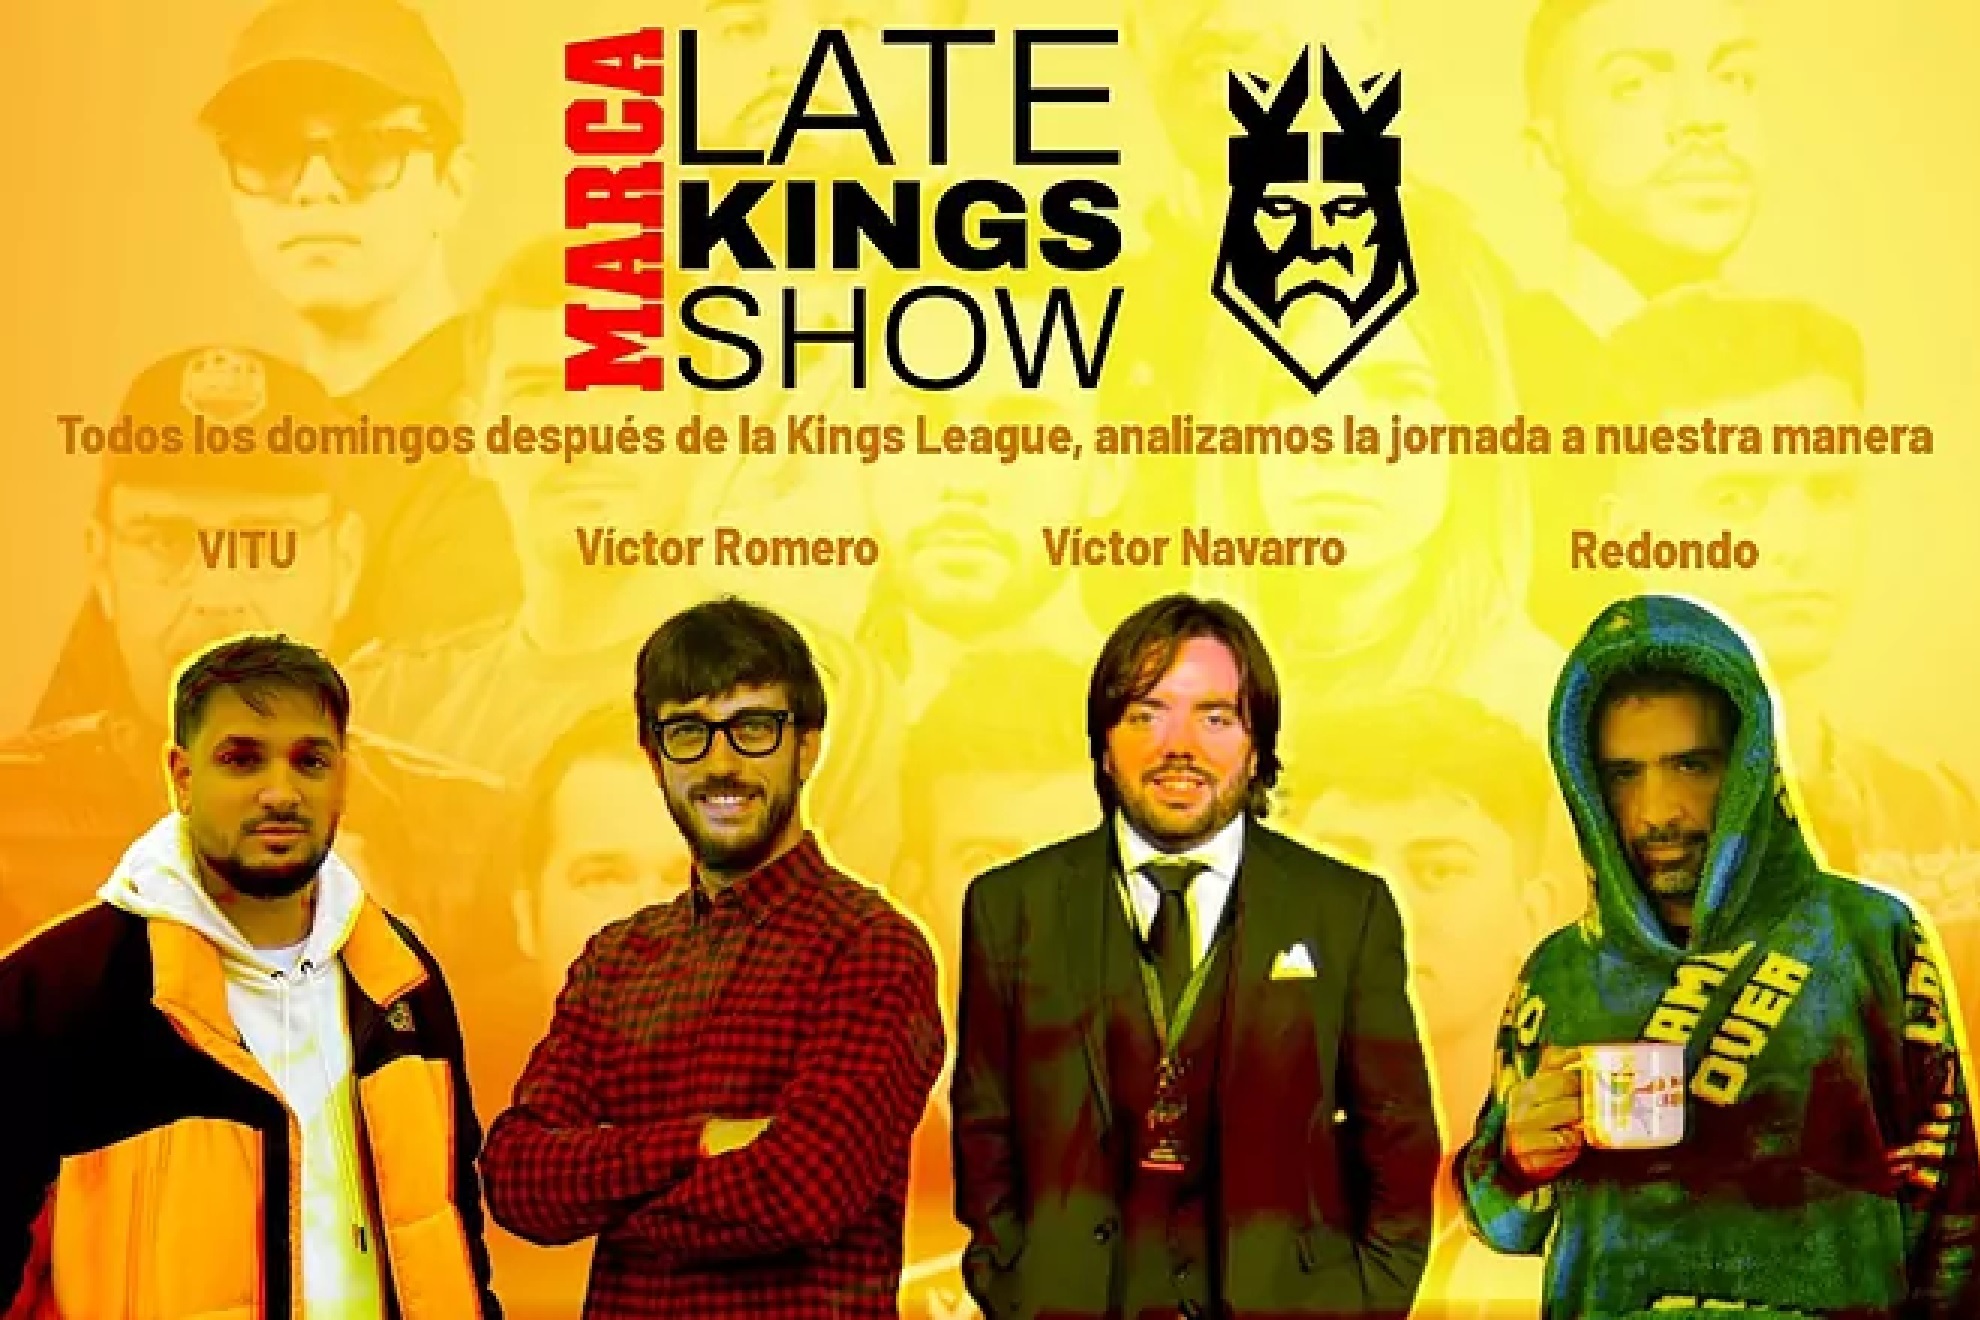 'Late Kings Show' en directo: resumen, anlisis y repaso de la jornada 4 de la Kings League InfoJobs